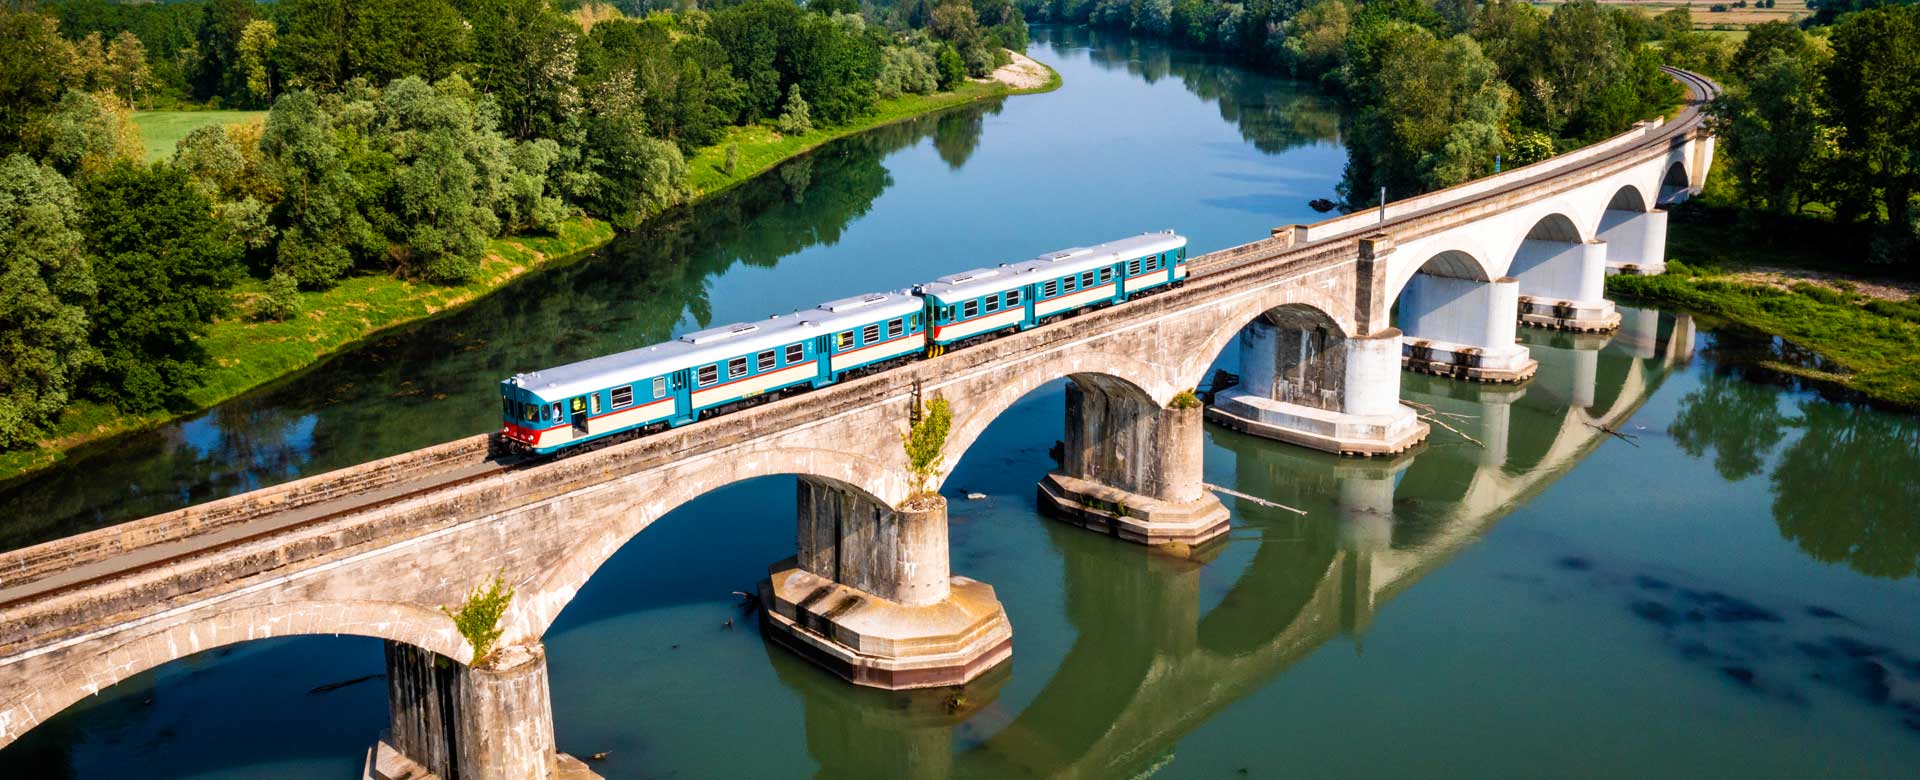 treno storico della Fondazione FS Italiane